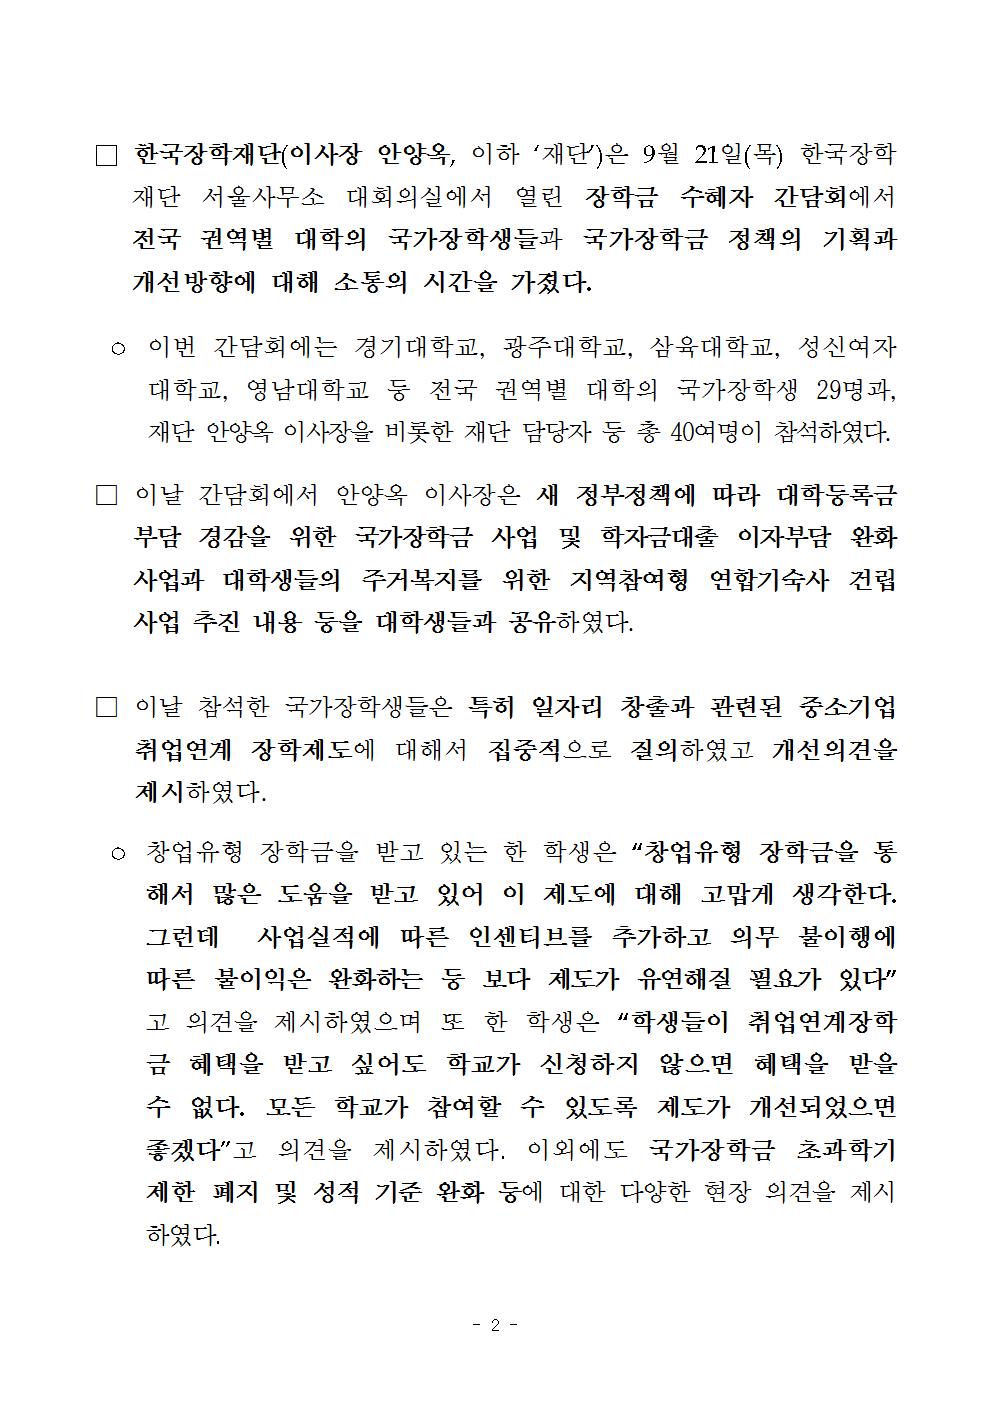 09-22(금)[보도자료]_한국장학재단 대학생 장학금 수혜자 간담회 개최002.jpg